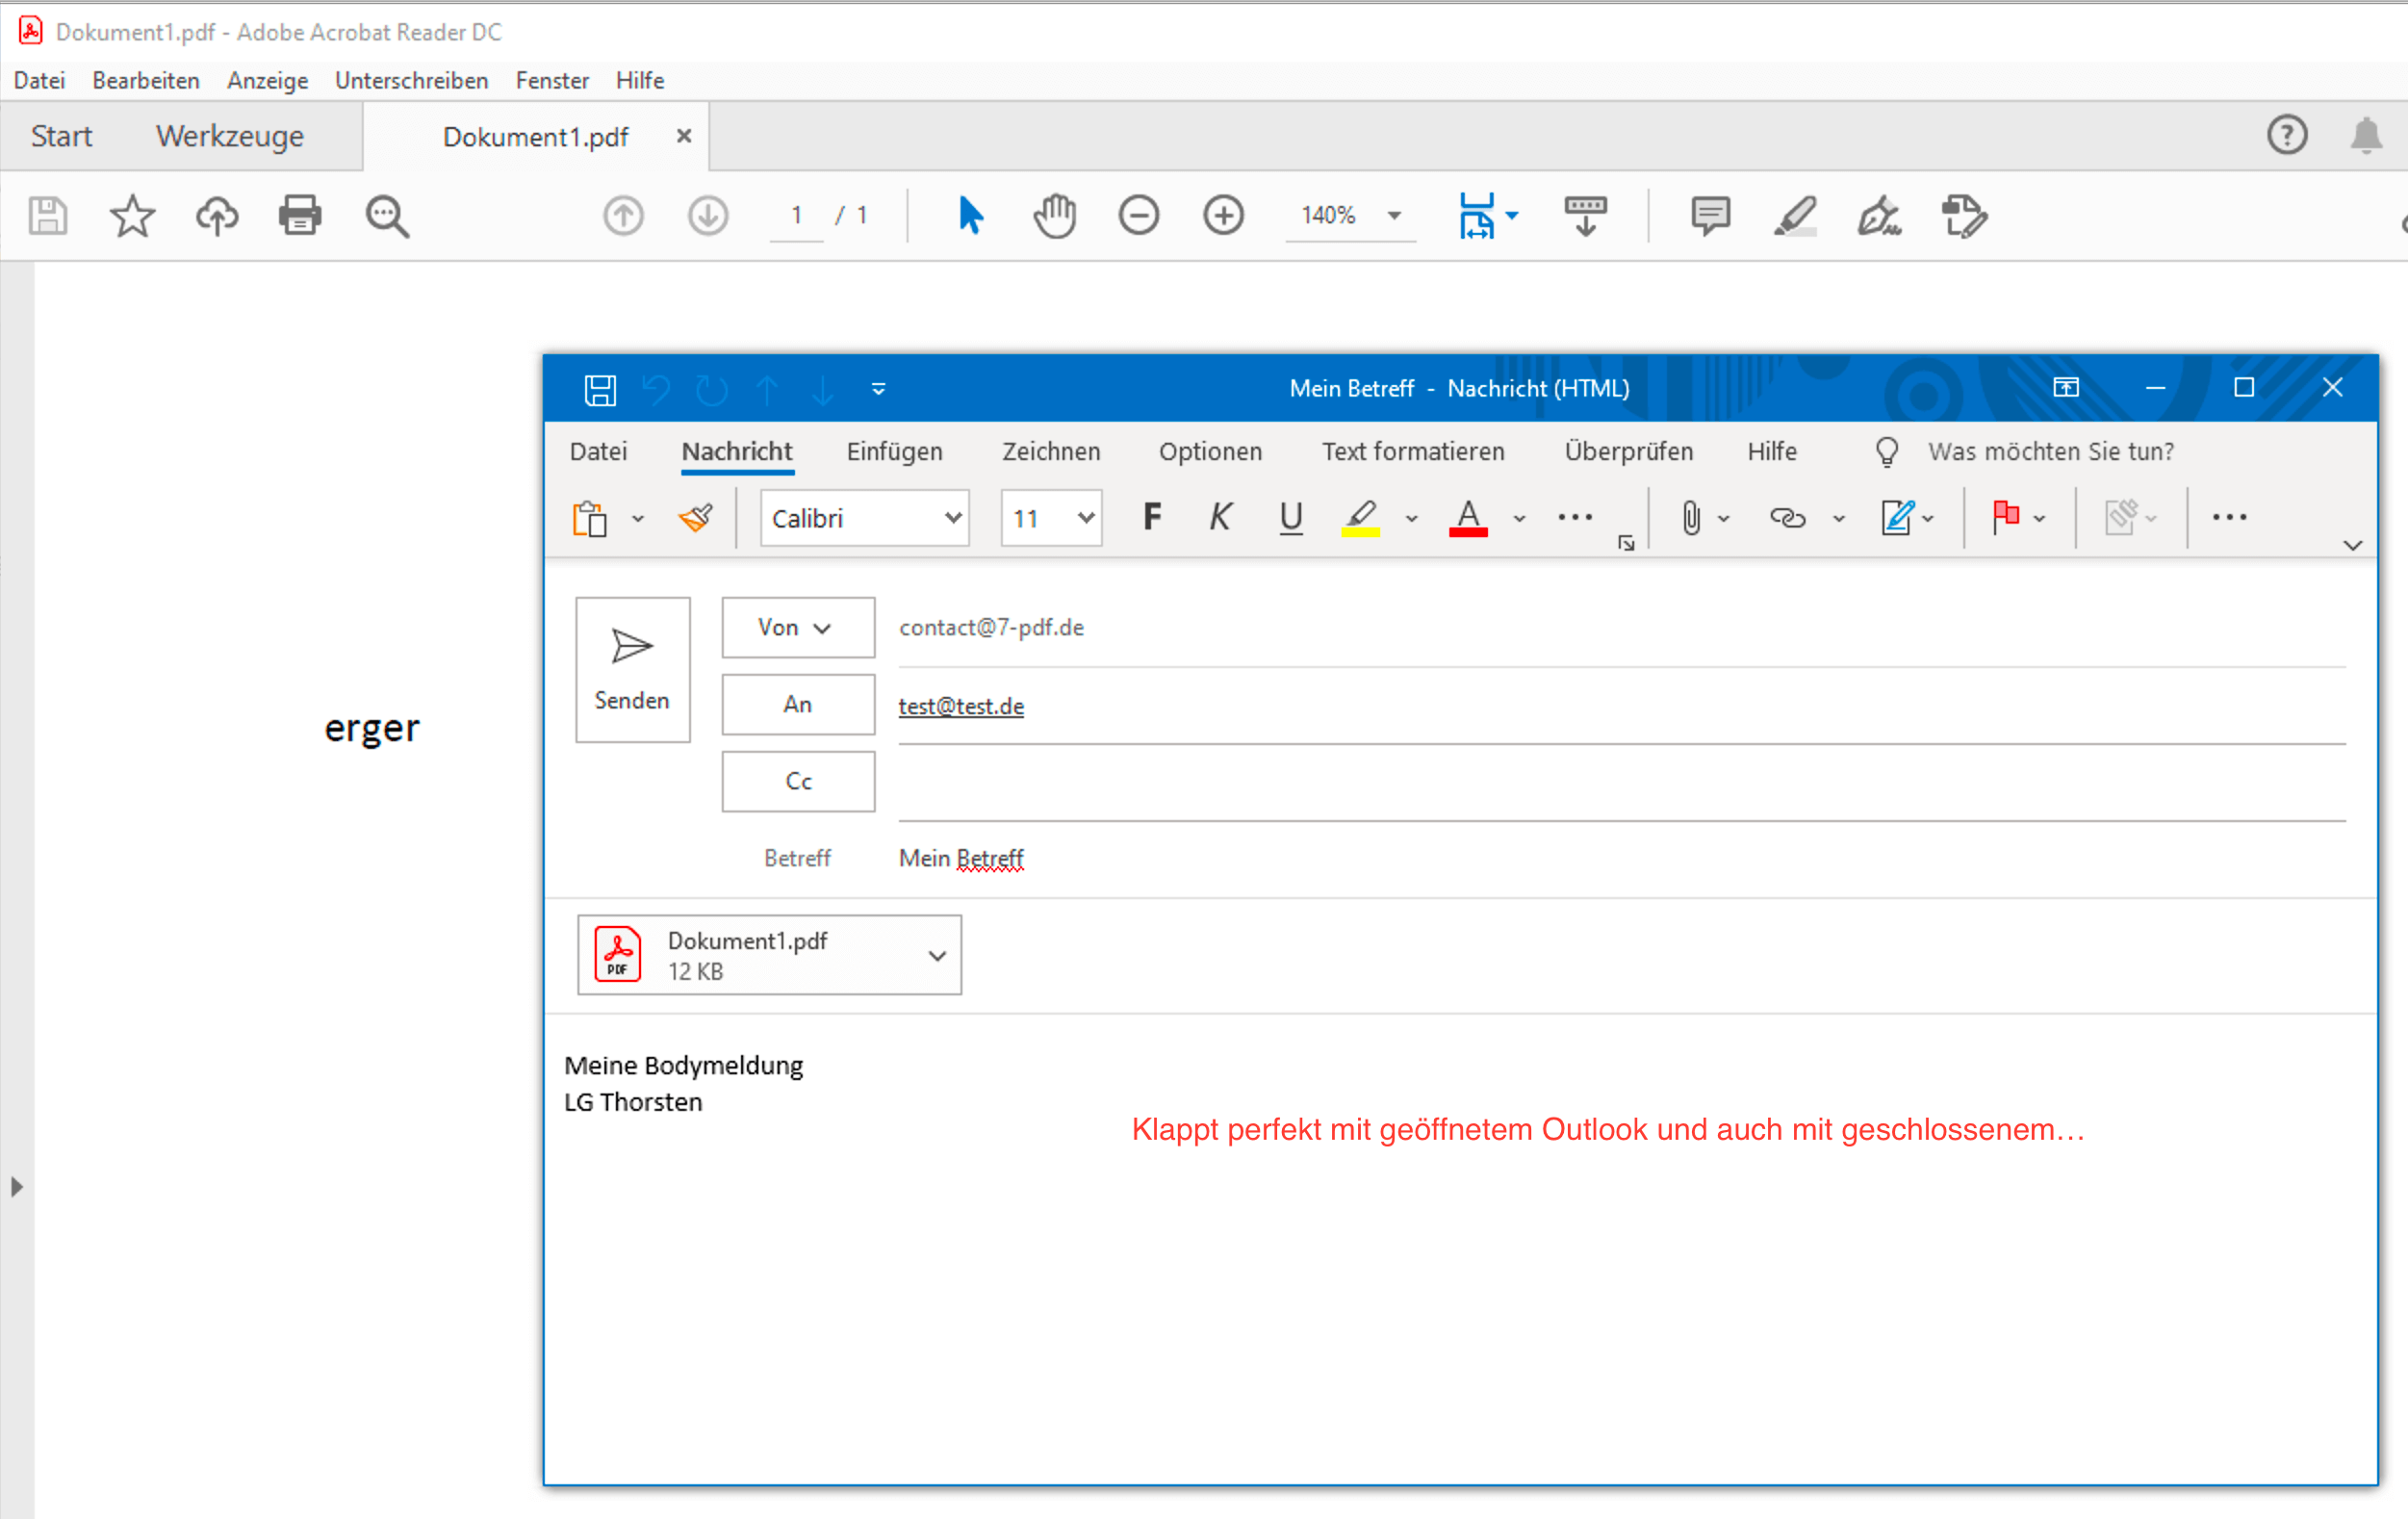 Le courrier électronique Outlook avec fichier PDF en pièce jointe s'ouvre automatiquement